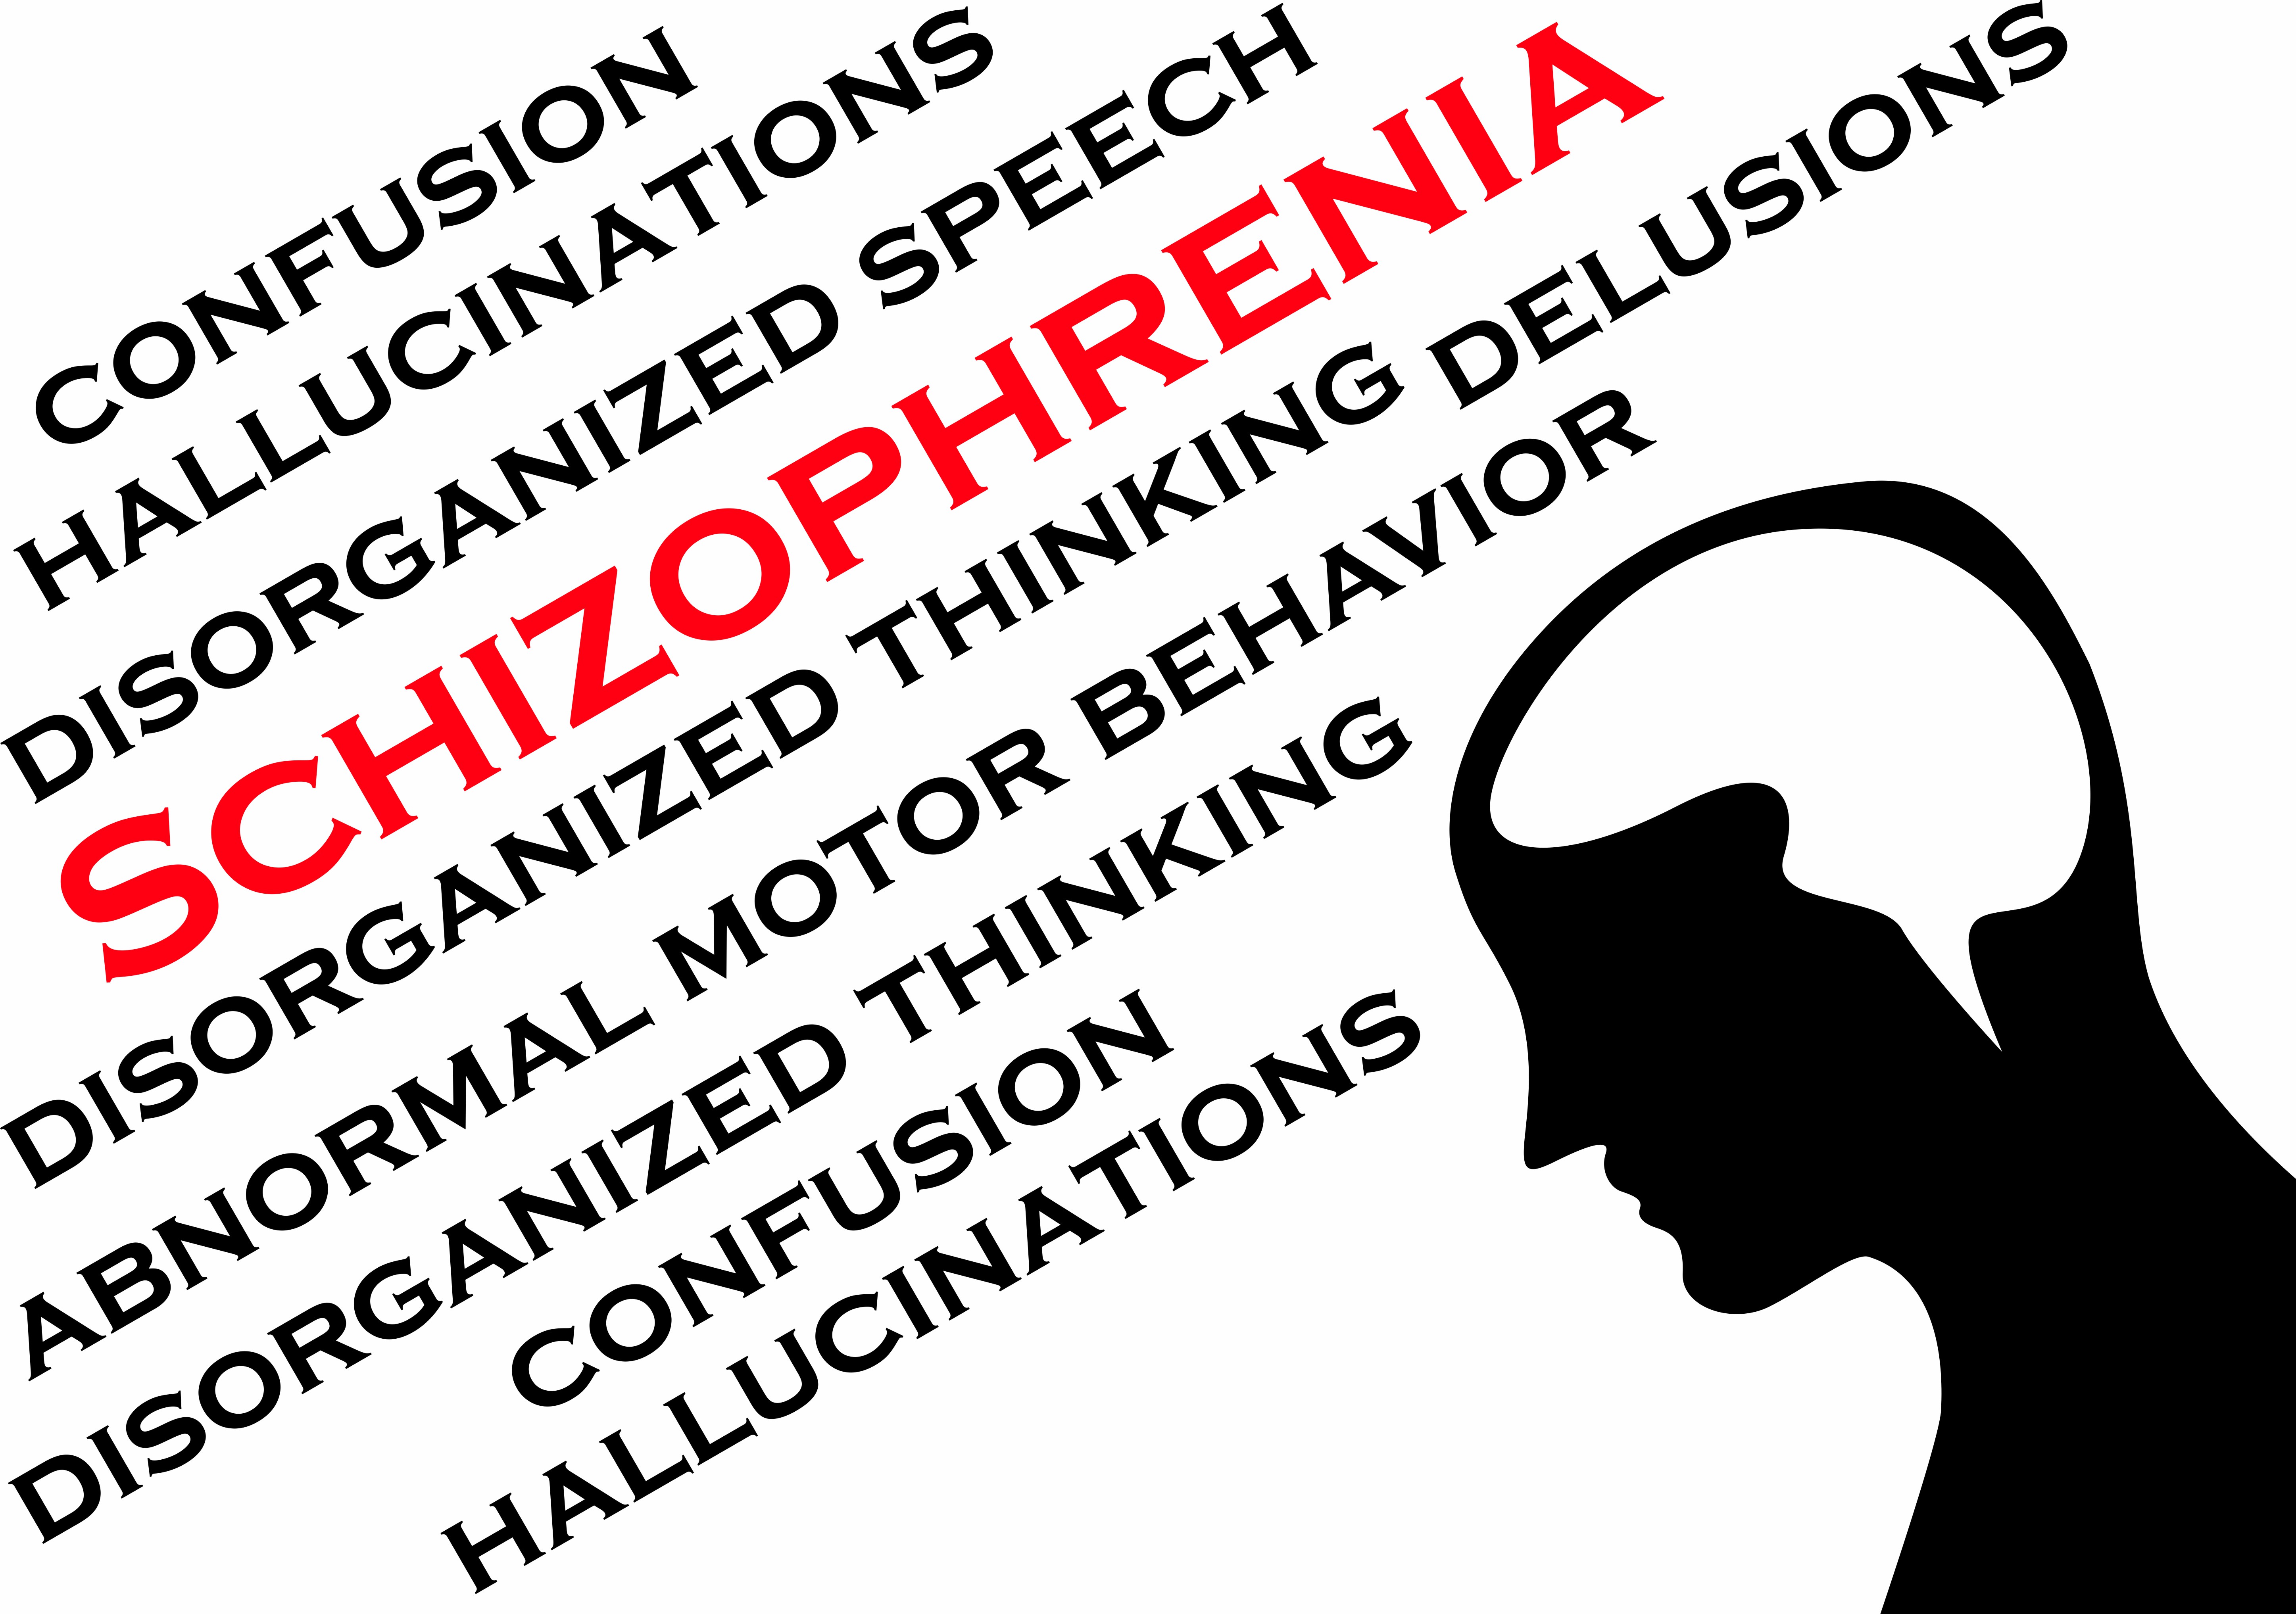 schizophrenia symptoms